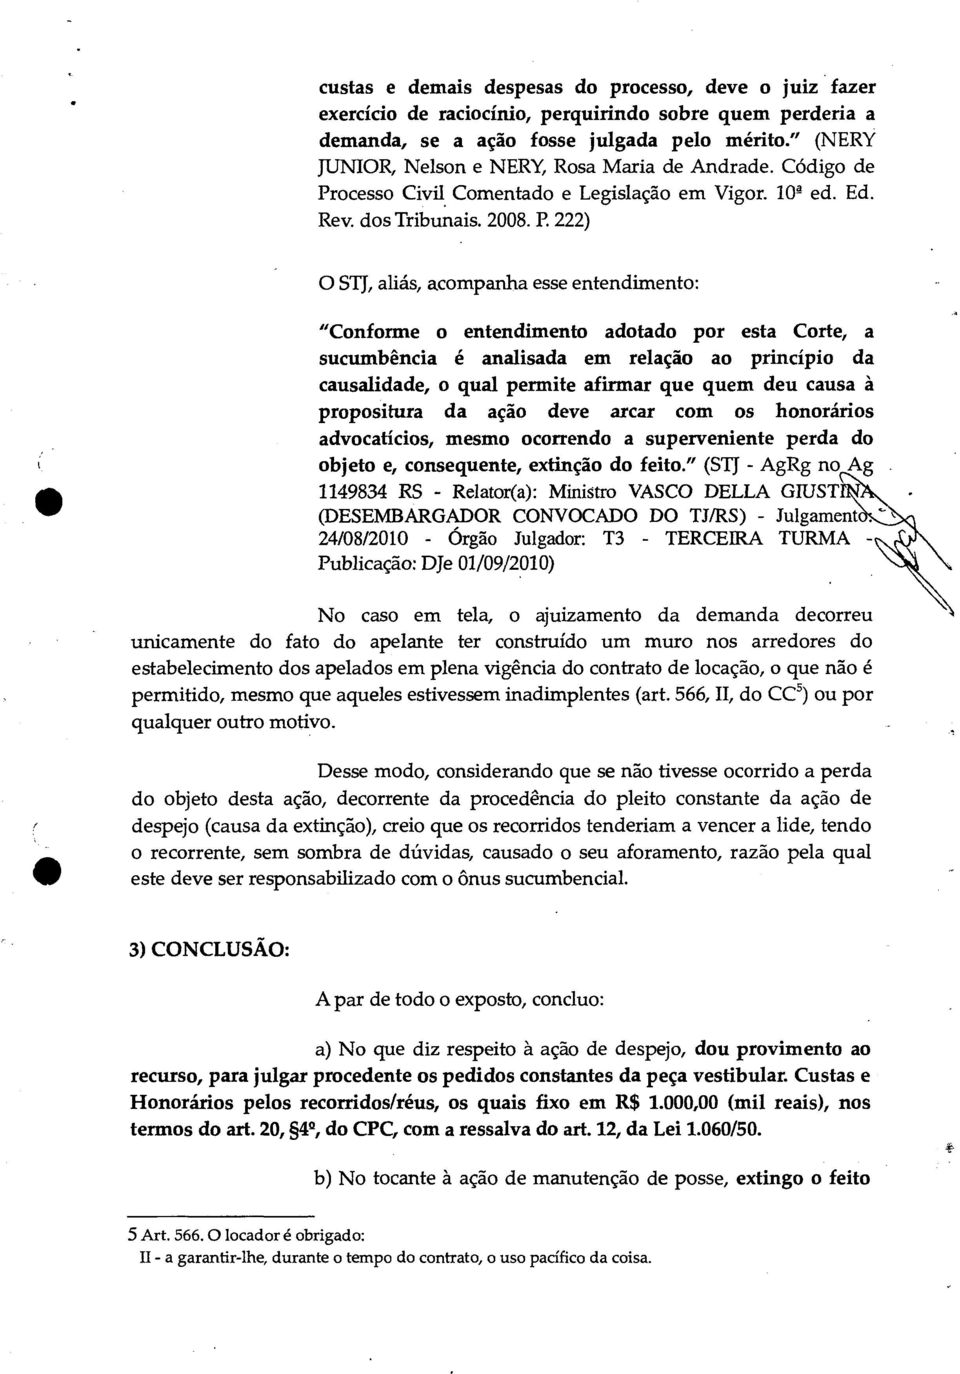 ocesso Civil Comentado e Legislação em Vigor. 10 4 ed. Ed. Rev. dos Tribunais. 2008. P.